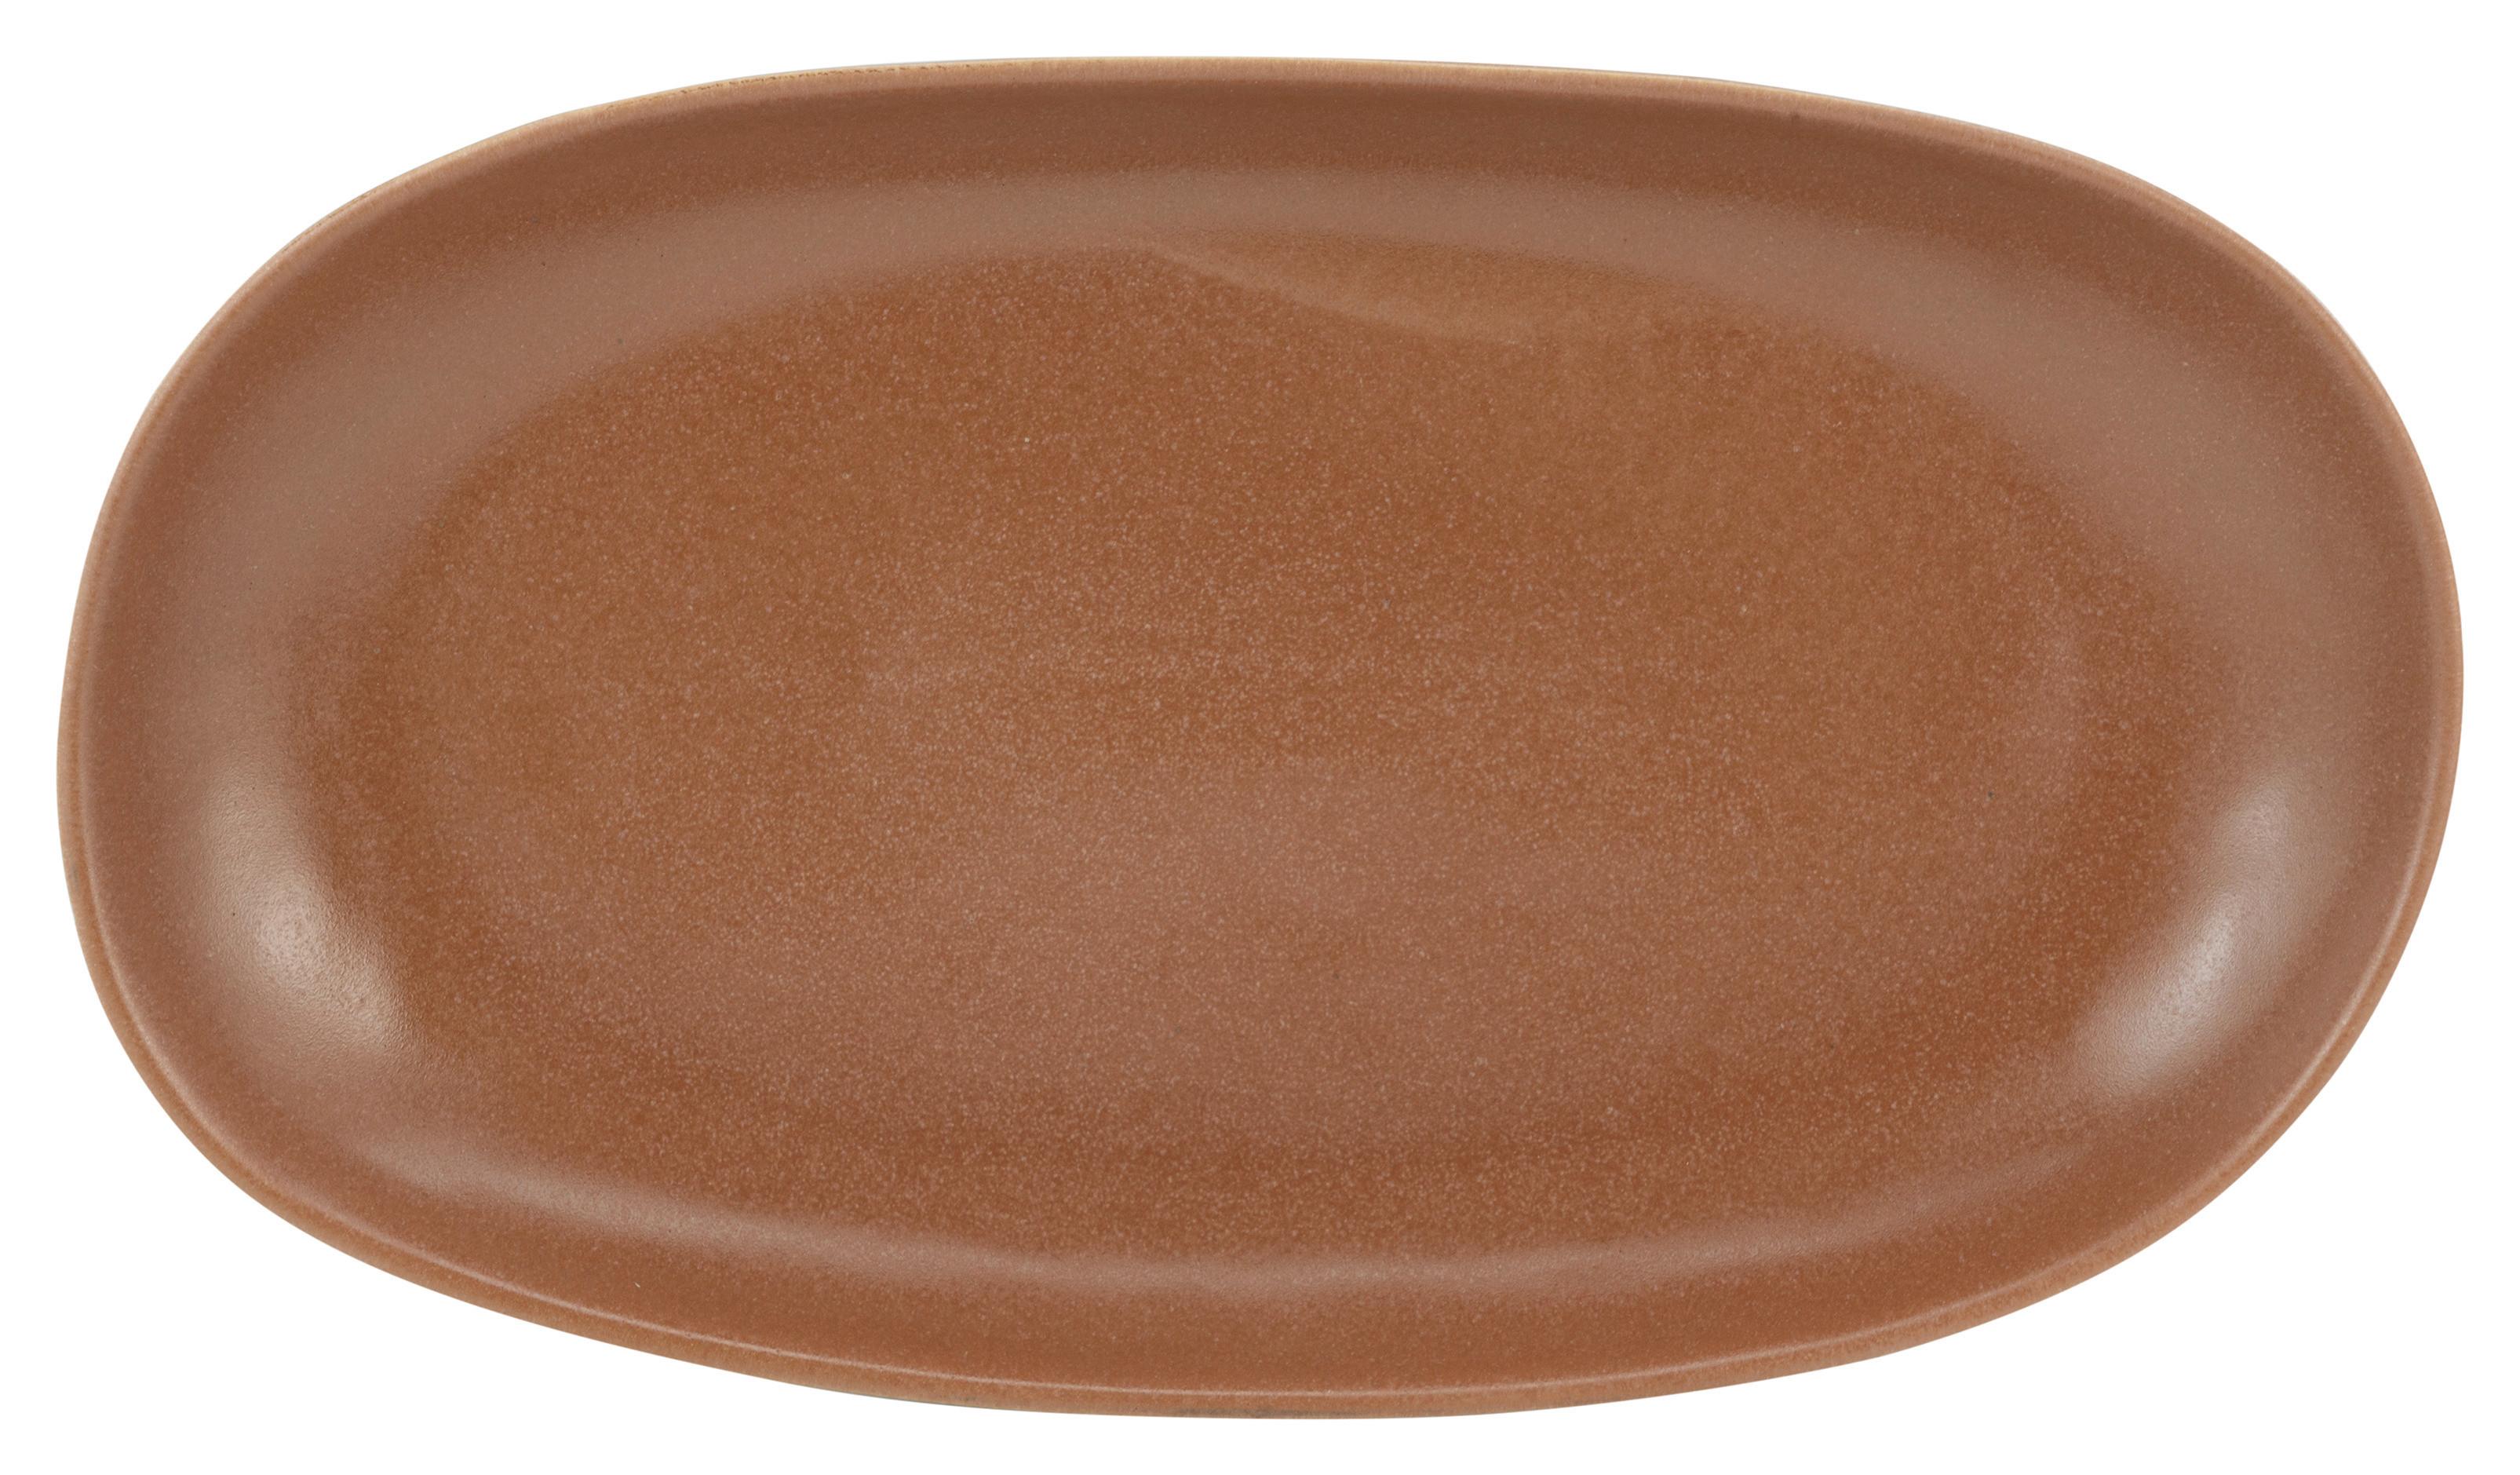 Platzteller Sahara aus Steinzeug - Terra cotta, LIFESTYLE, Keramik (29,5/18/3,5cm) - Zandiara